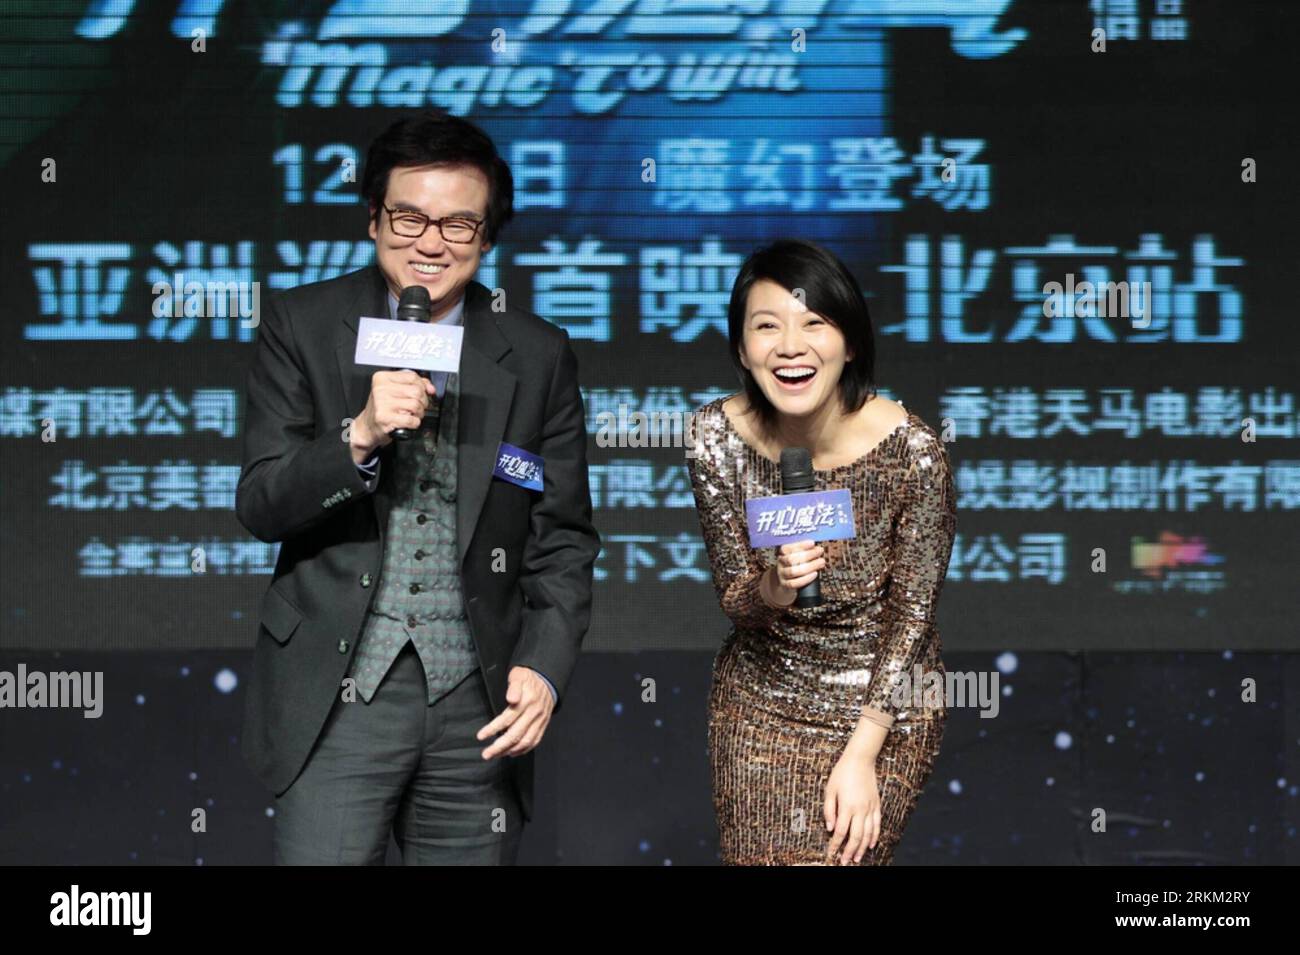 Bildnummer : 56413665 Datum : 23.11.2011 Copyright : imago/Xinhua (111123) -- BEIJING, 23 novembre 2011 (Xinhua) -- le producteur exécutif Bak-ming Wong et l'actrice Yan ni assistent à une conférence de presse du film Magic to Win à Beijing, capitale de la Chine, le 23 novembre 2011. Le film réalisé par Wilson Yip et interprété par Yan ni, Chun Wu et Karena ng sera diffusé le 1 décembre. (Xinhua)(mcg) CHINA-BEIJING-FILM MAGIE À GAGNER -PREMIERE CONFÉRENCE DE PRESSE (CN) PUBLICATIONxNOTxINxCHN People Entertainment film PK Filmpremiere x0x xtm 2011 quer 56413665 Date 23 11 2011 Copyright Imago XINHUA Beijing N Banque D'Images